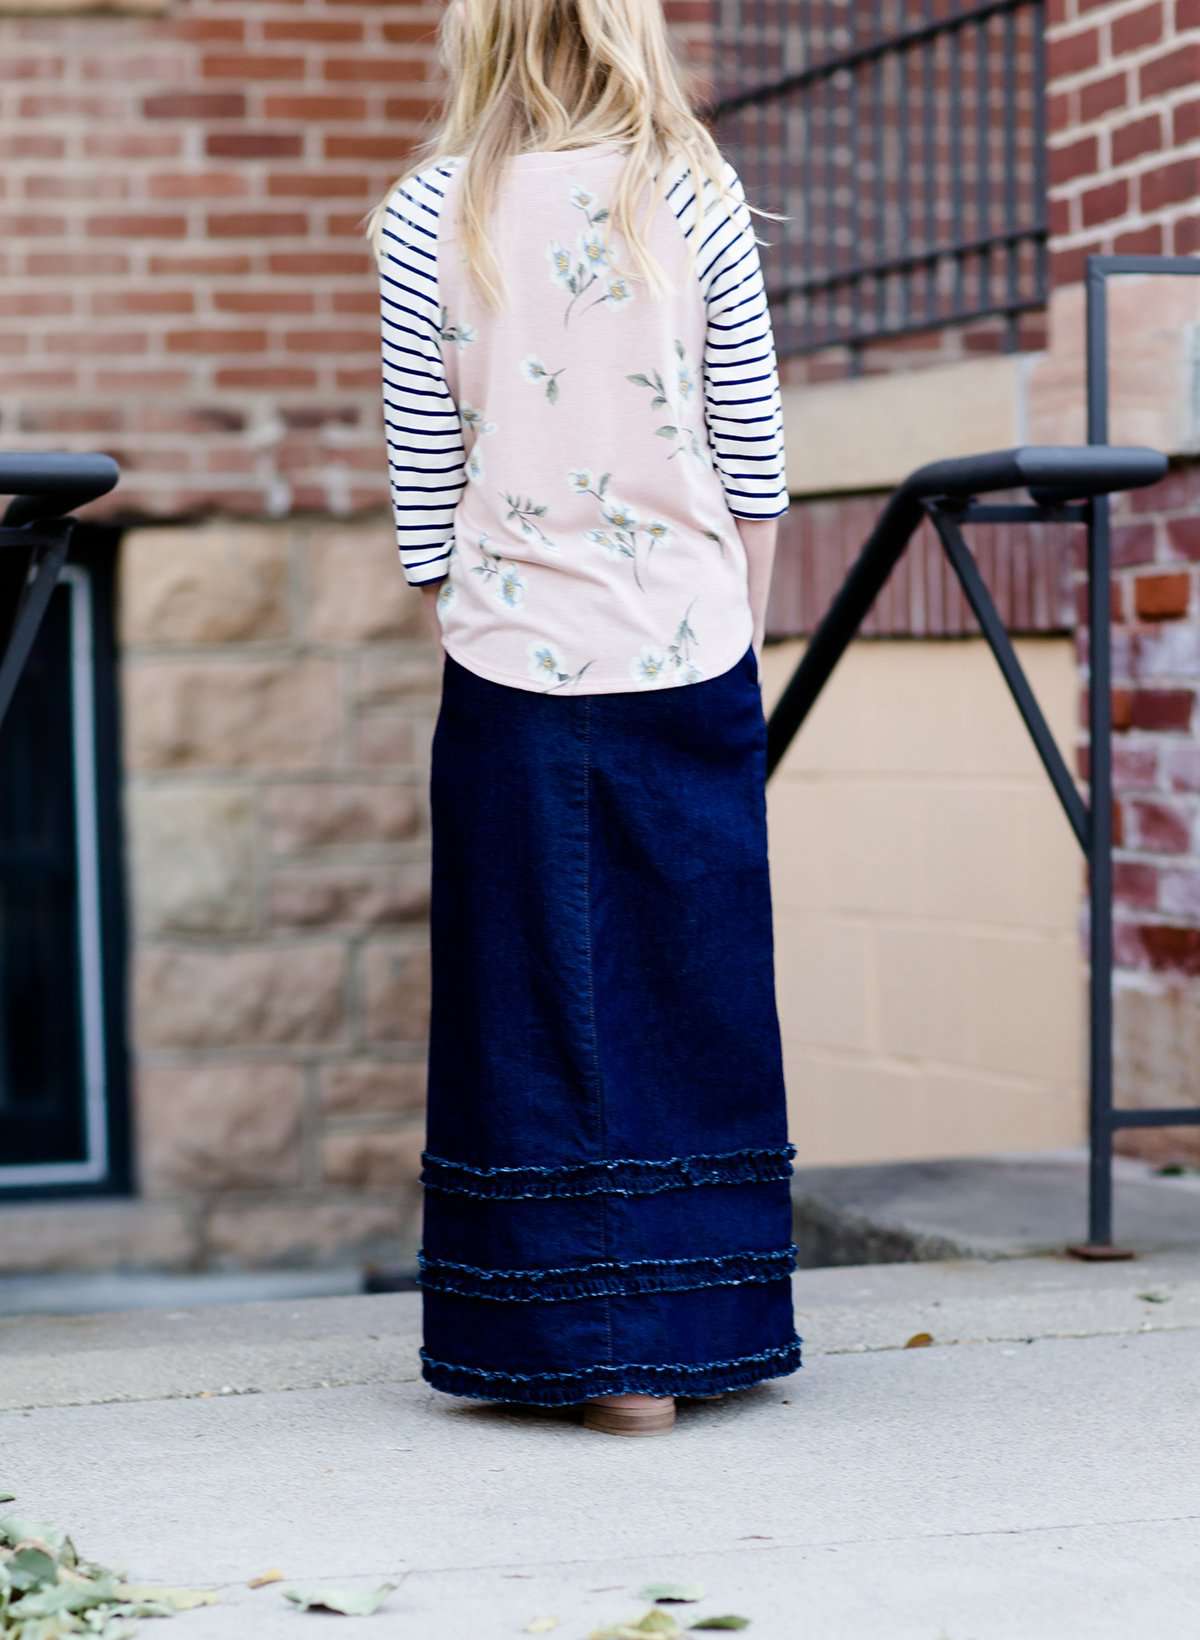 Modest girl wearing a long denim skirt with ruffles on the bottom hem